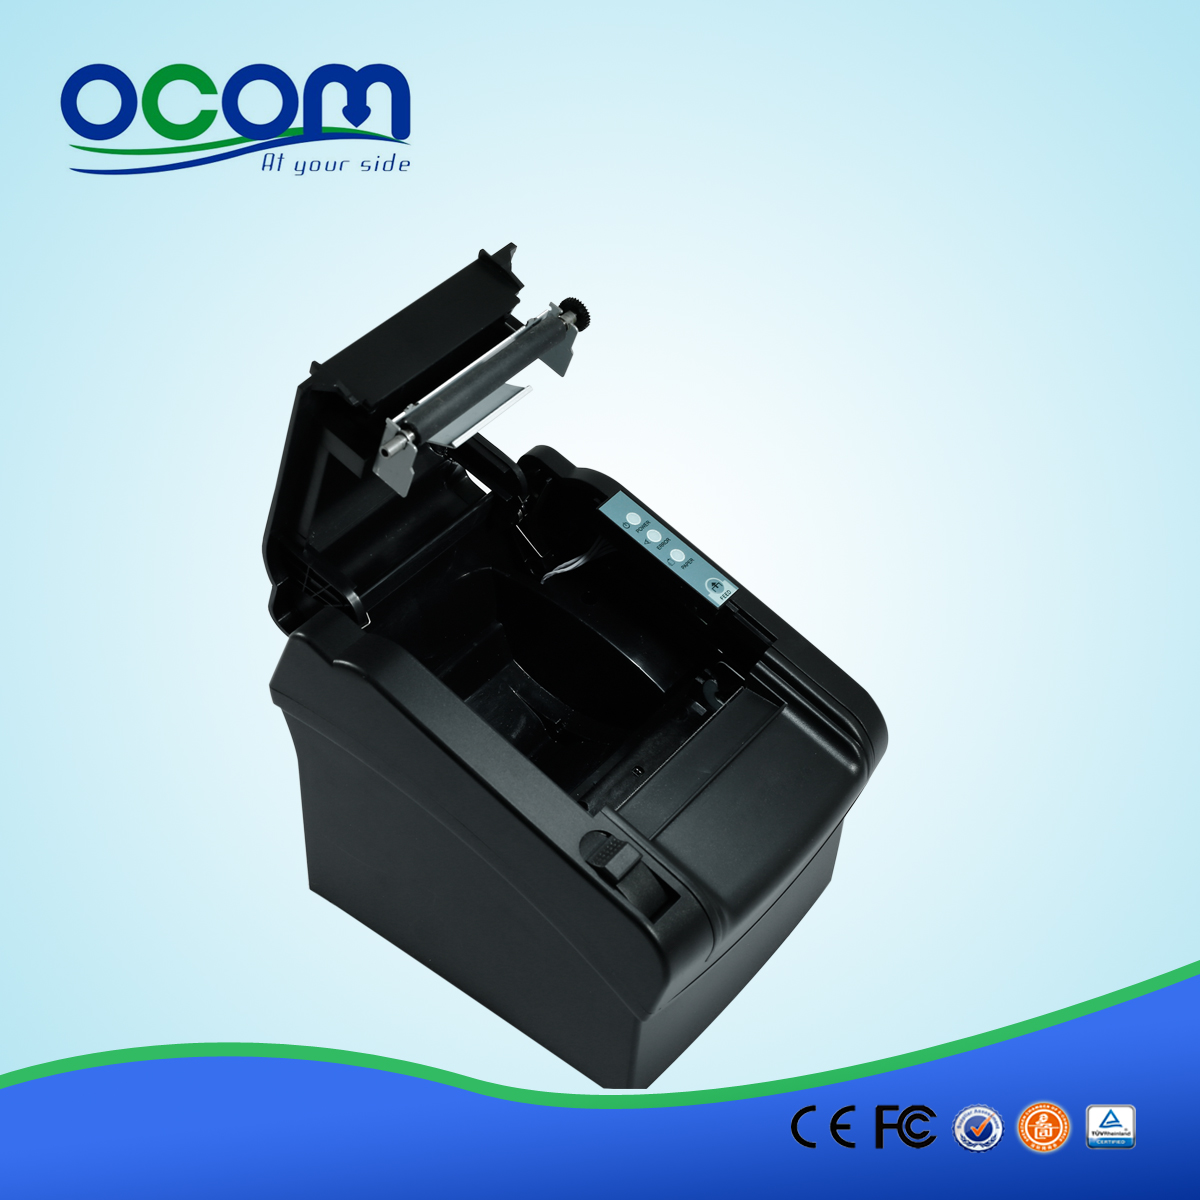 80mm thermique imprimante code-barres thermique imprimante prix (OCPP-802)